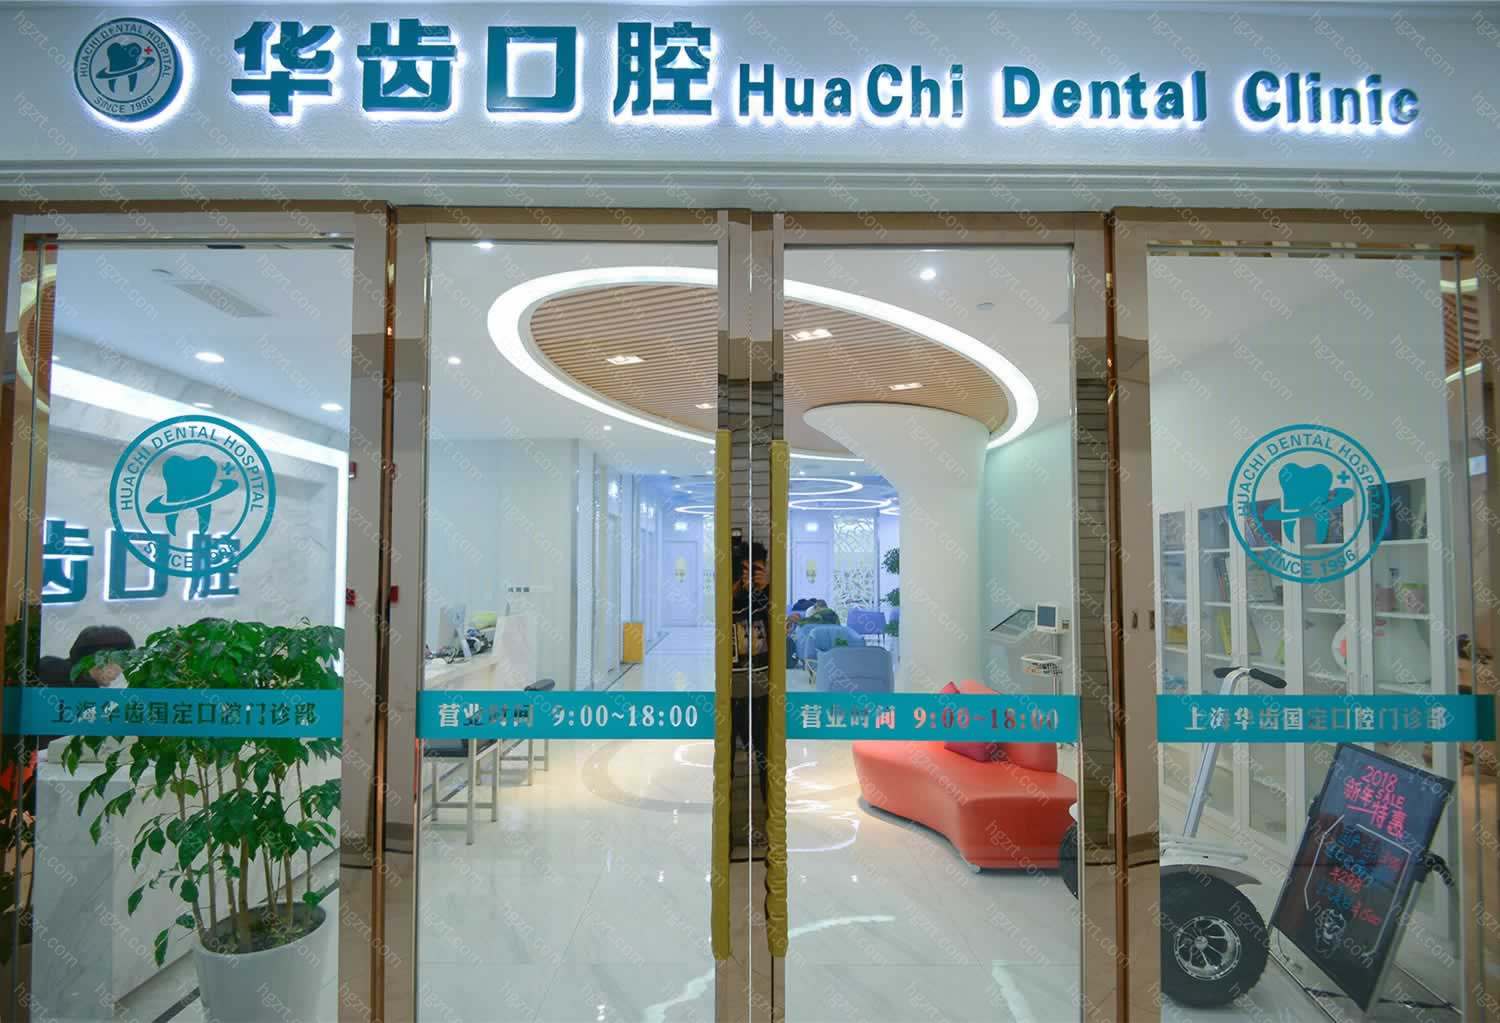 上海华齿口腔医院主要开展“口腔种植、口腔正畸、口腔修复、儿童口腔、X线诊断”等齿科项目